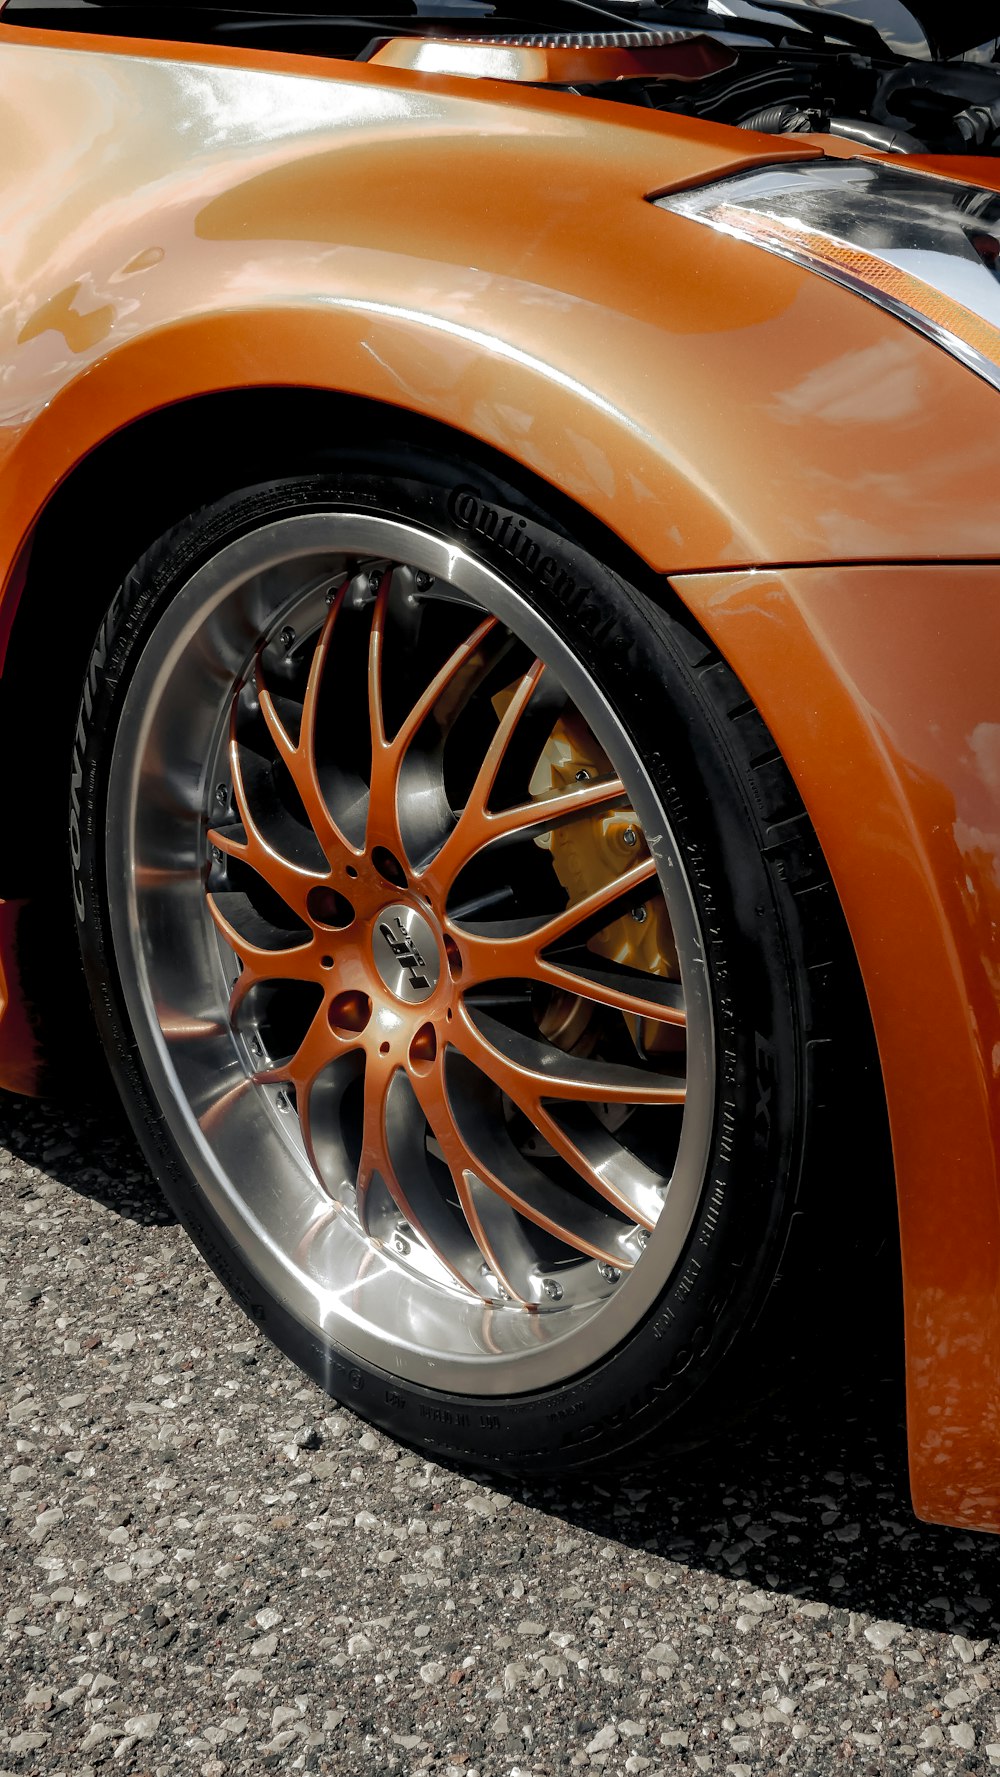 a close up of a orange sports car tire